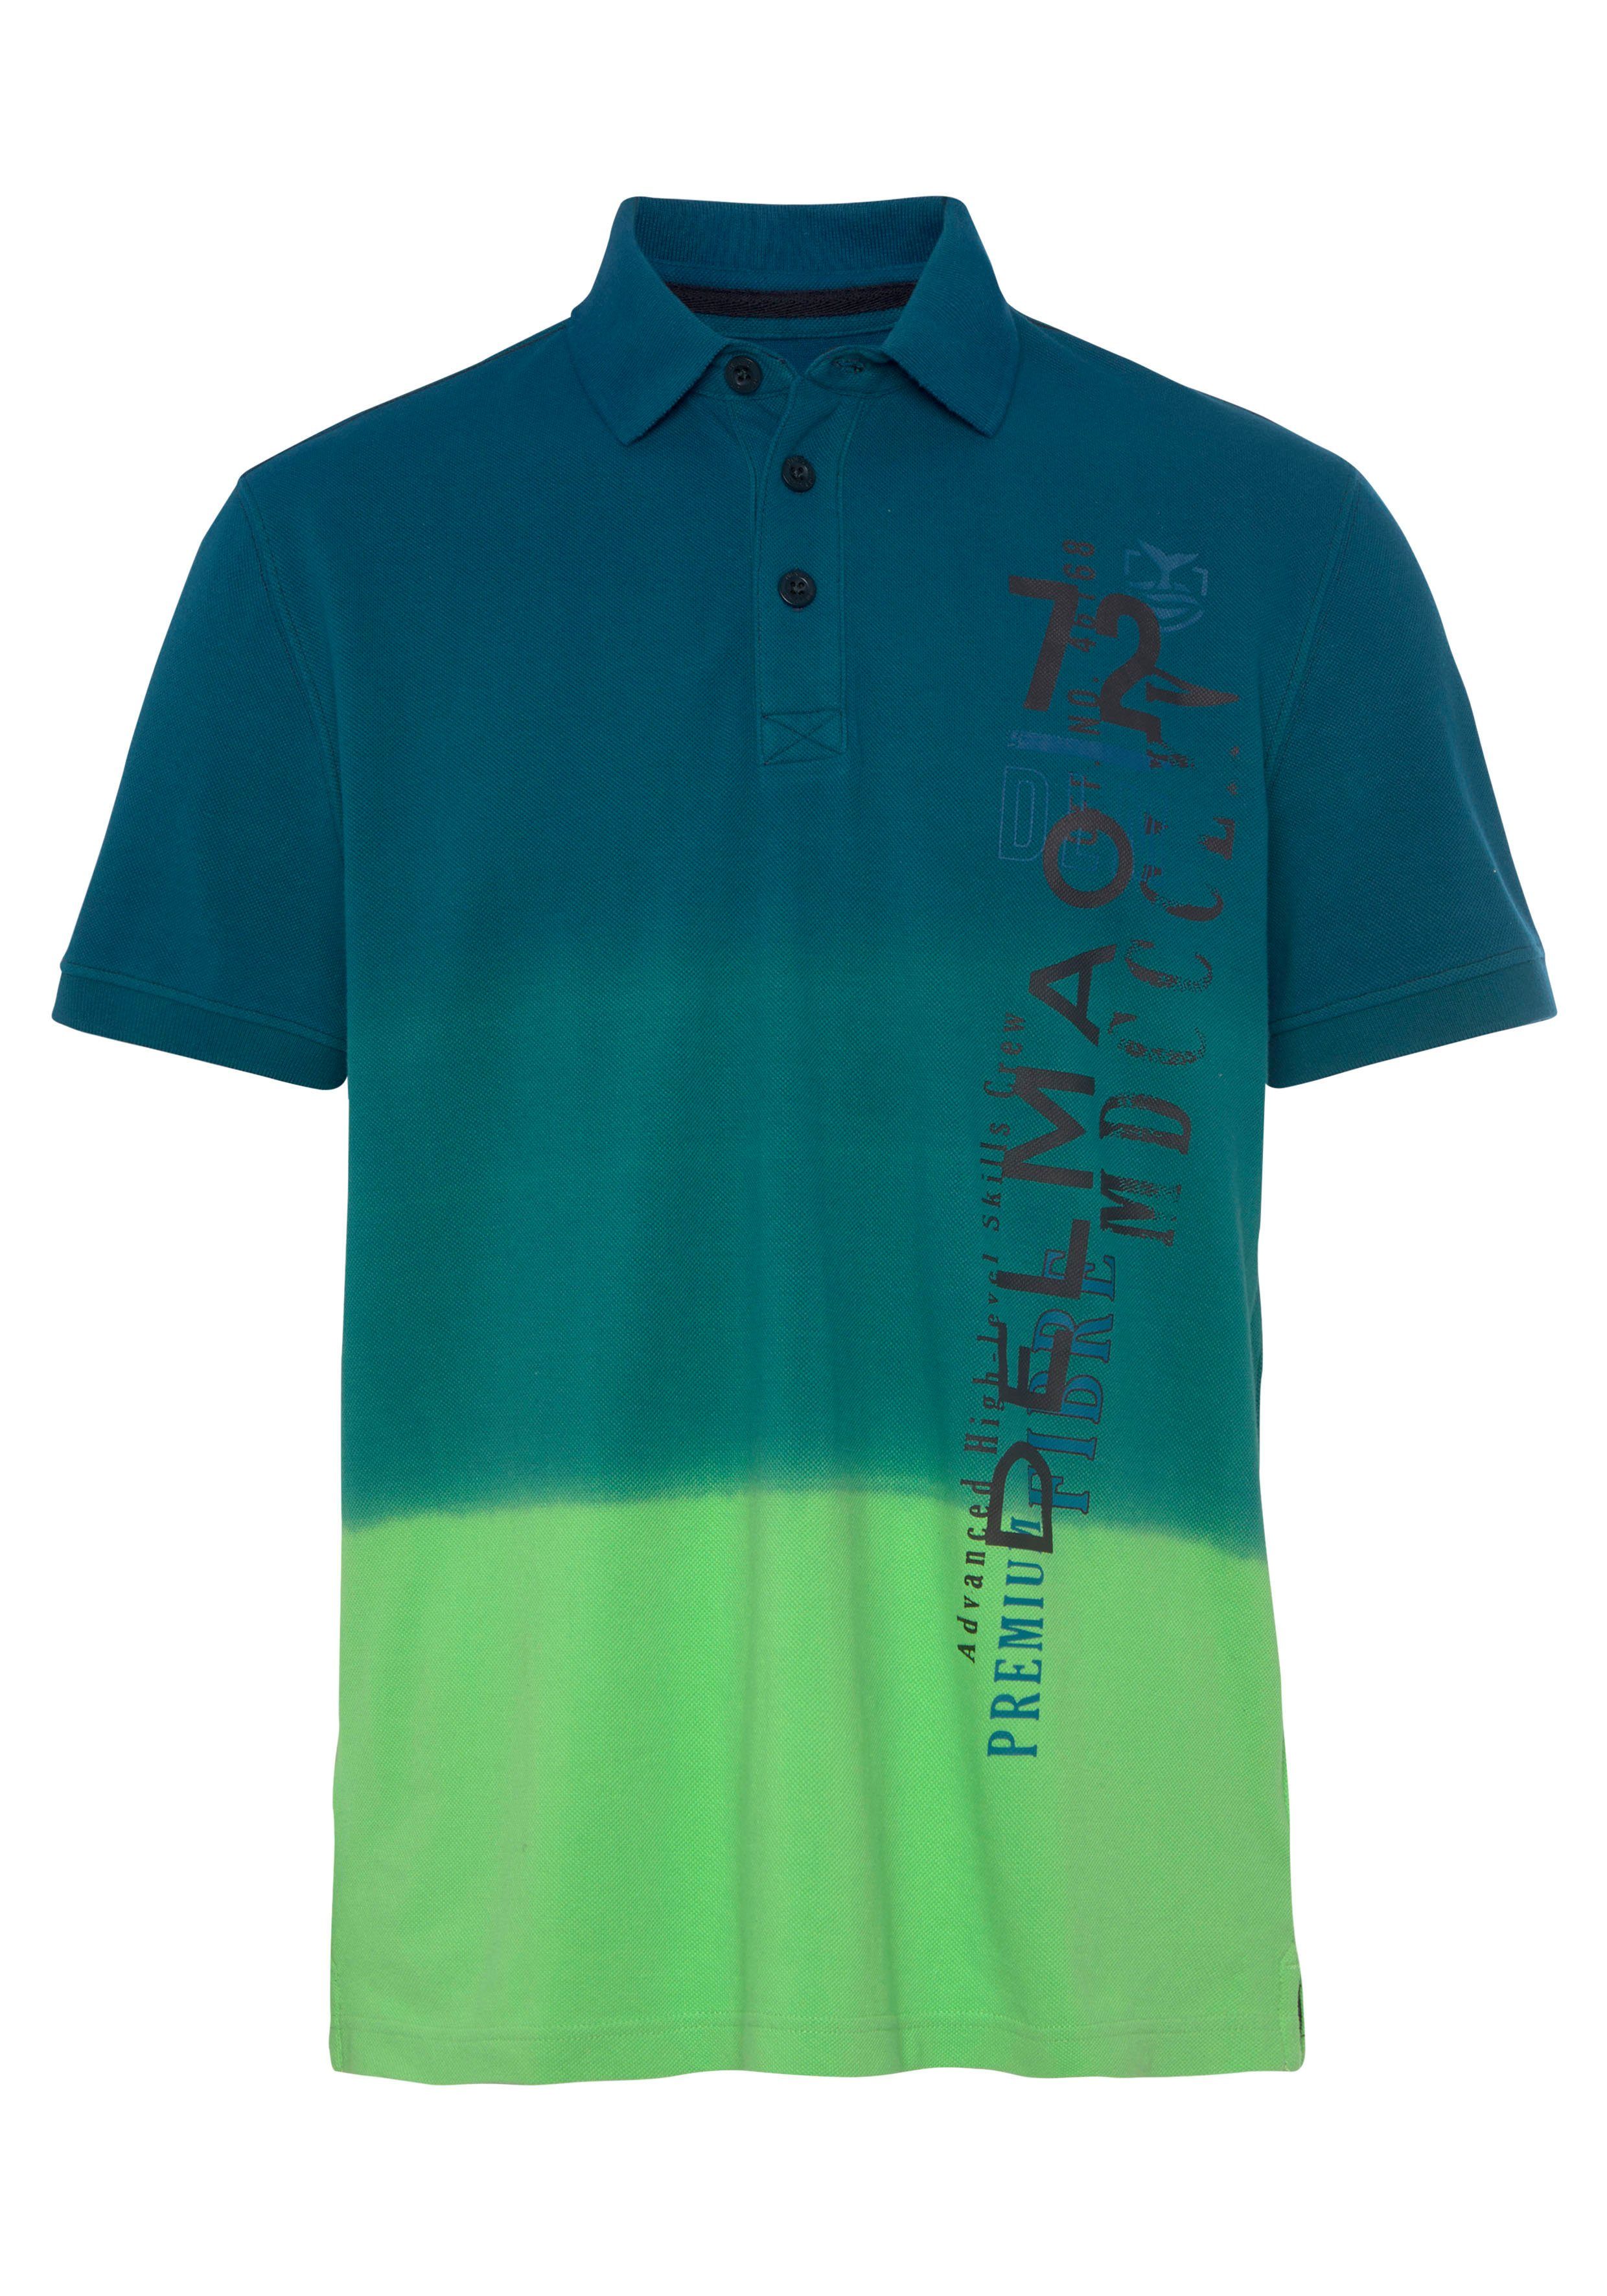 MARKE! und NEUE modischem Print- DELMAO Poloshirt mit Farbverlauf